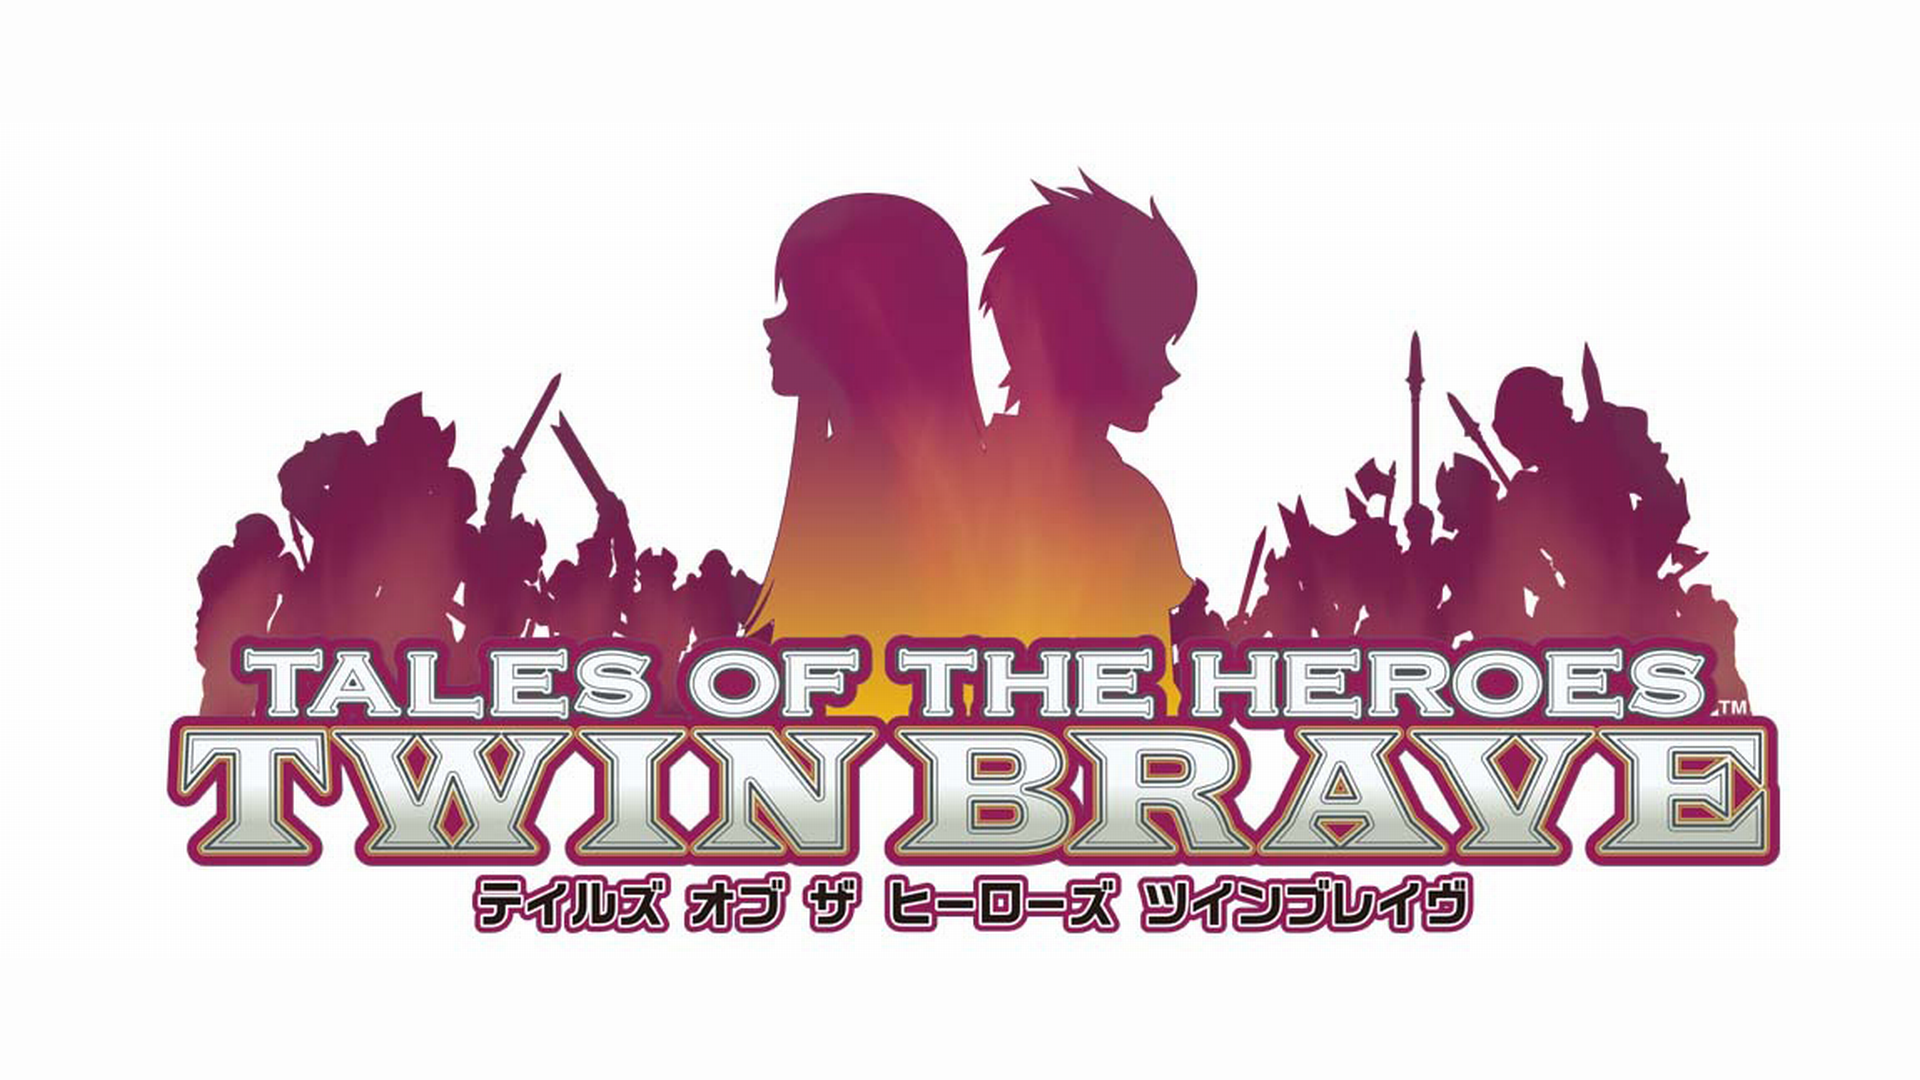 テイルズ オブ ザ ヒーローズ ツインブレイヴ / Tales of the Heroes: Twin Brave